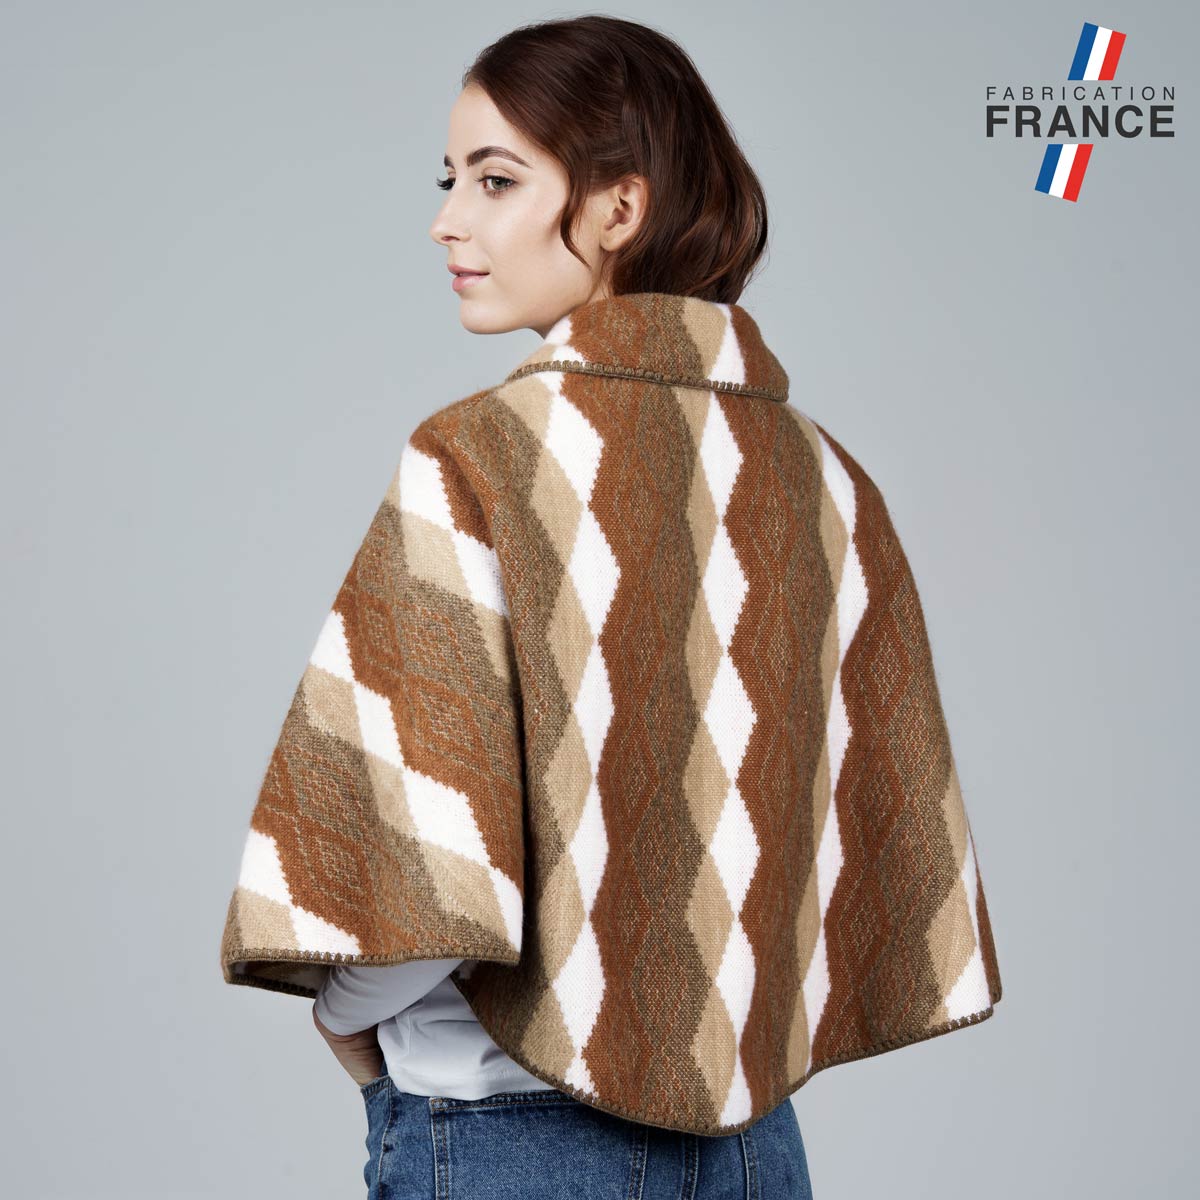 Petite-cape-femme-losange-marron-fabriquee-en-France--AT-06860_W12-2FR